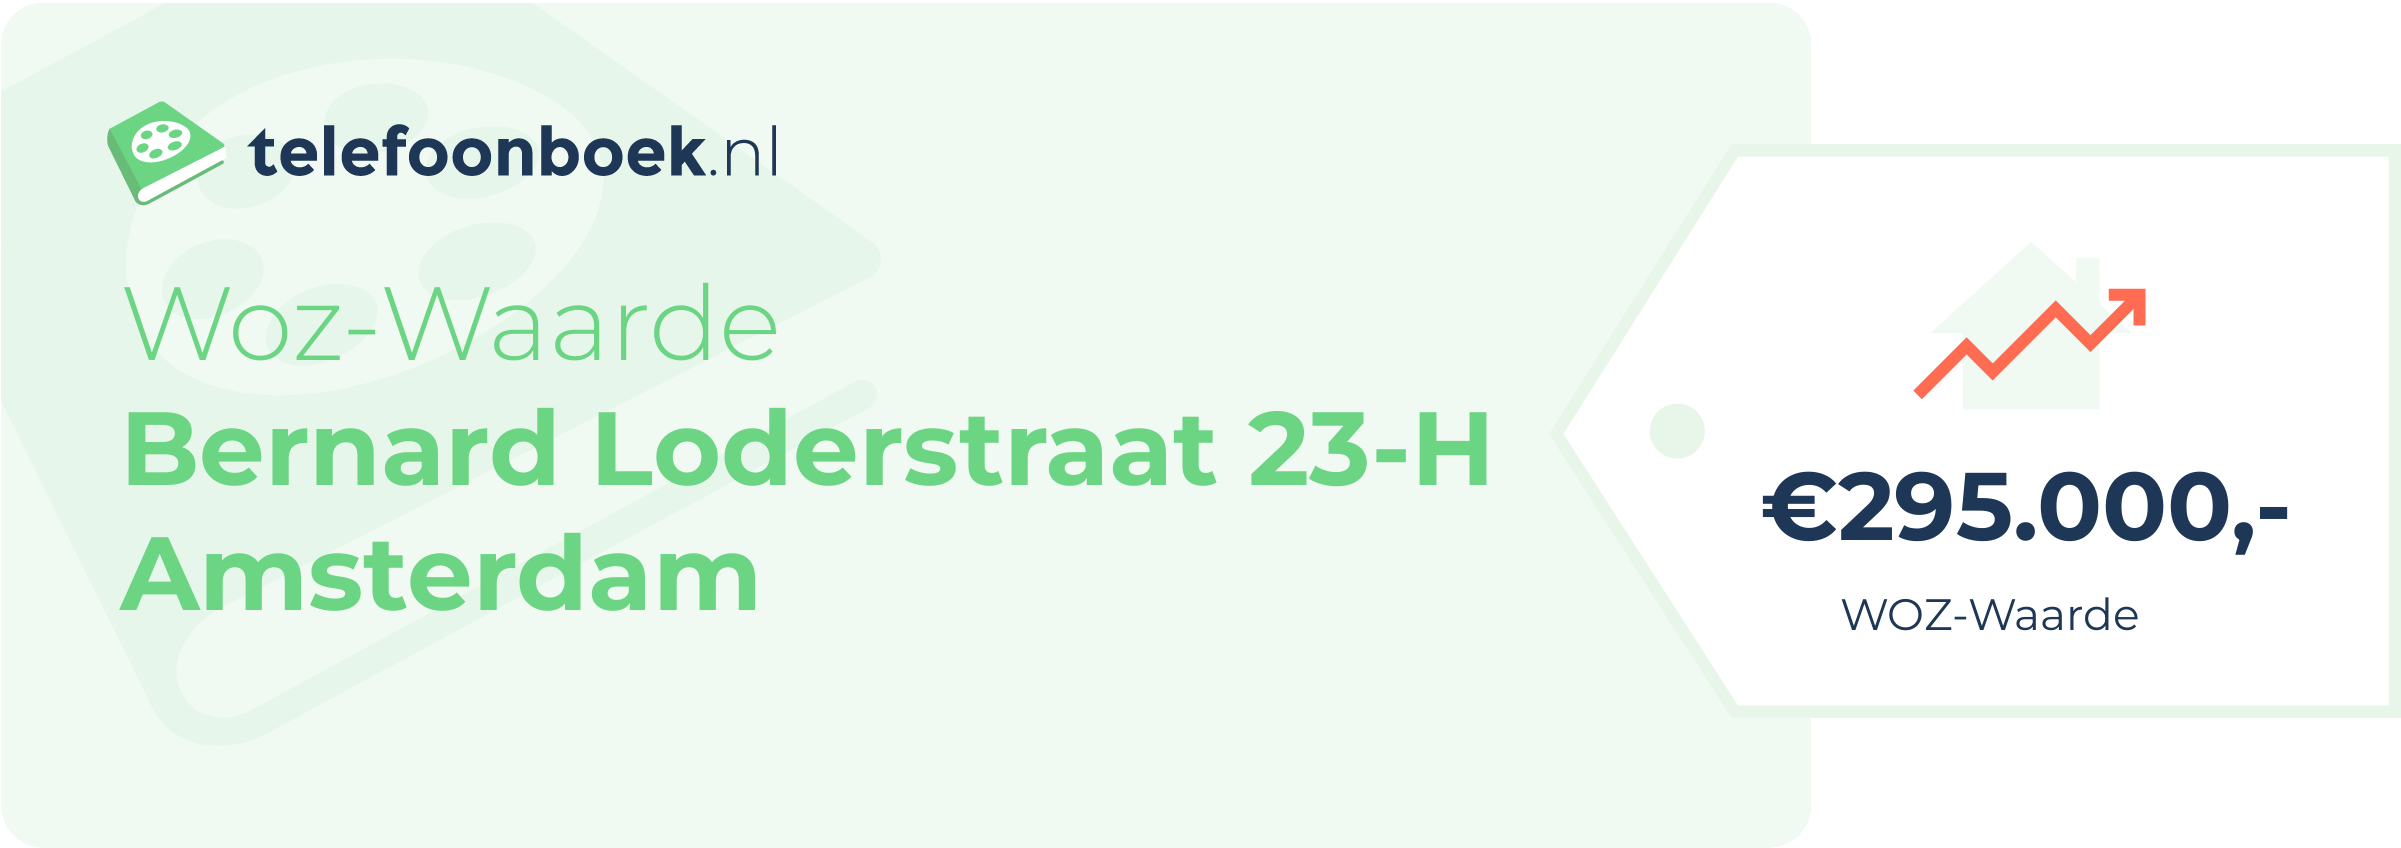 WOZ-waarde Bernard Loderstraat 23-H Amsterdam